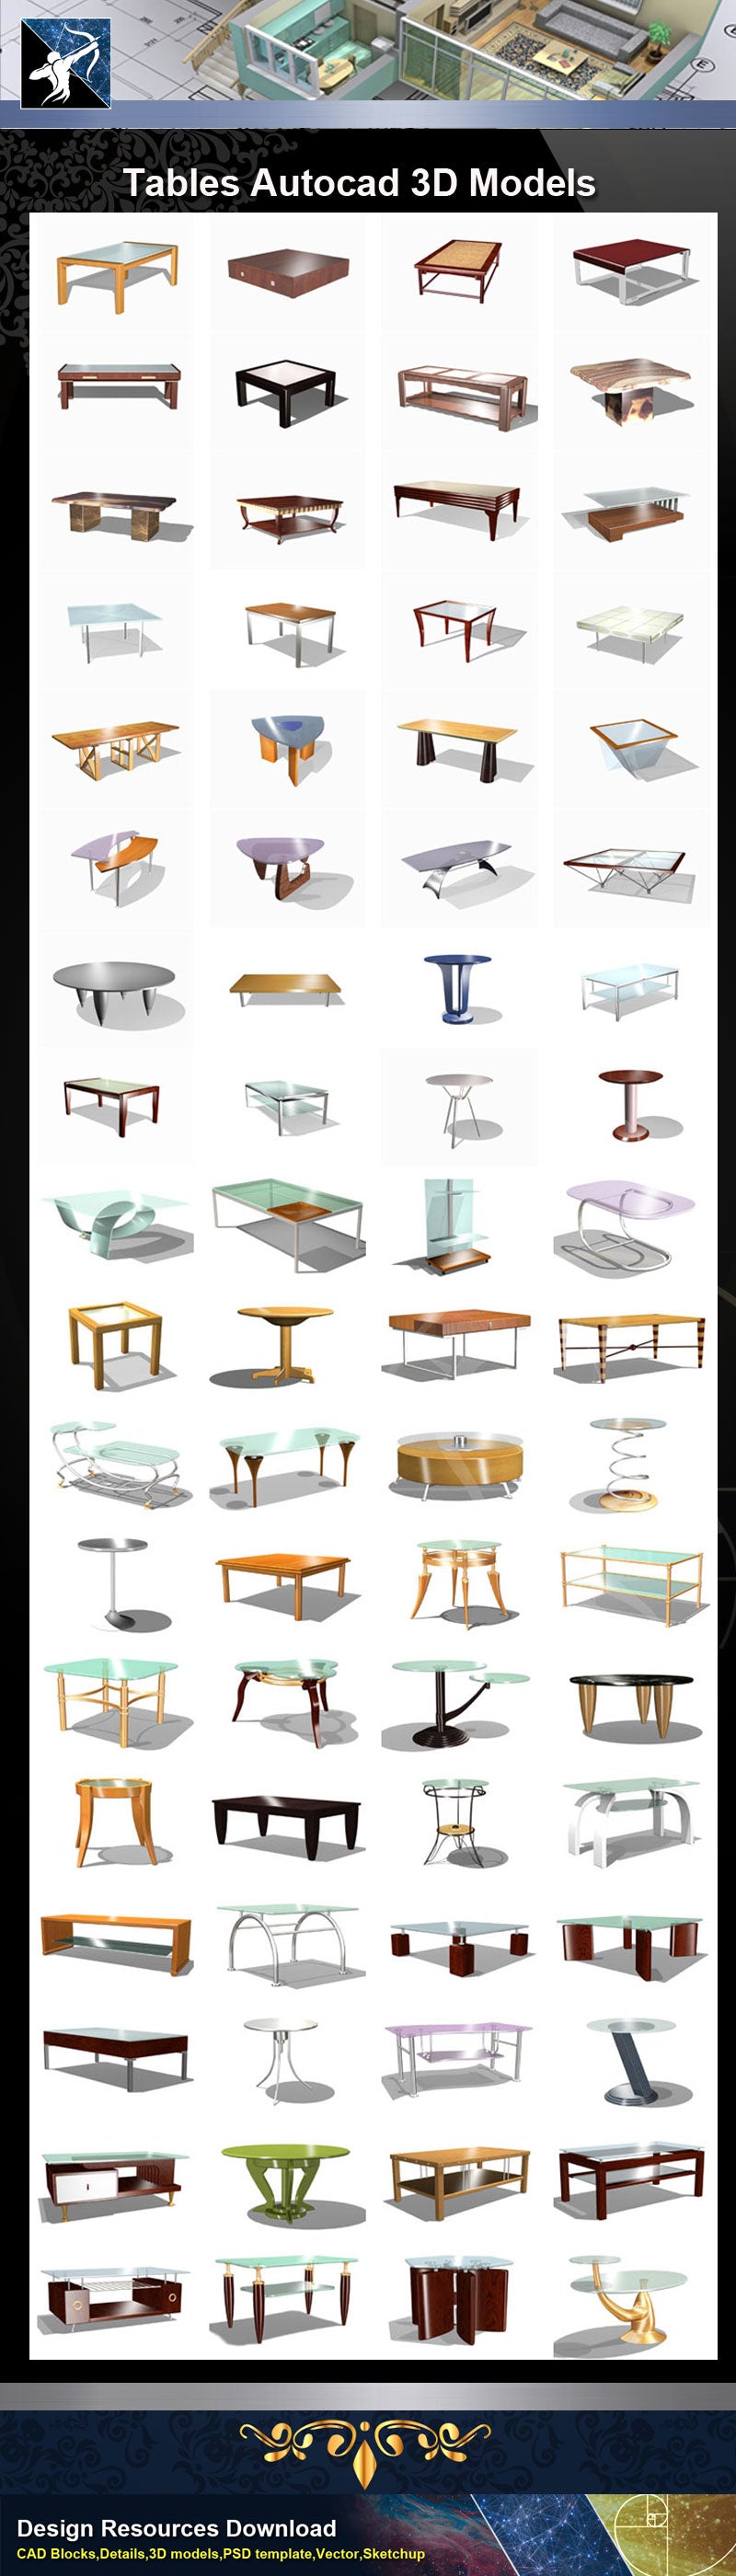 Tables Autocad 3D Models